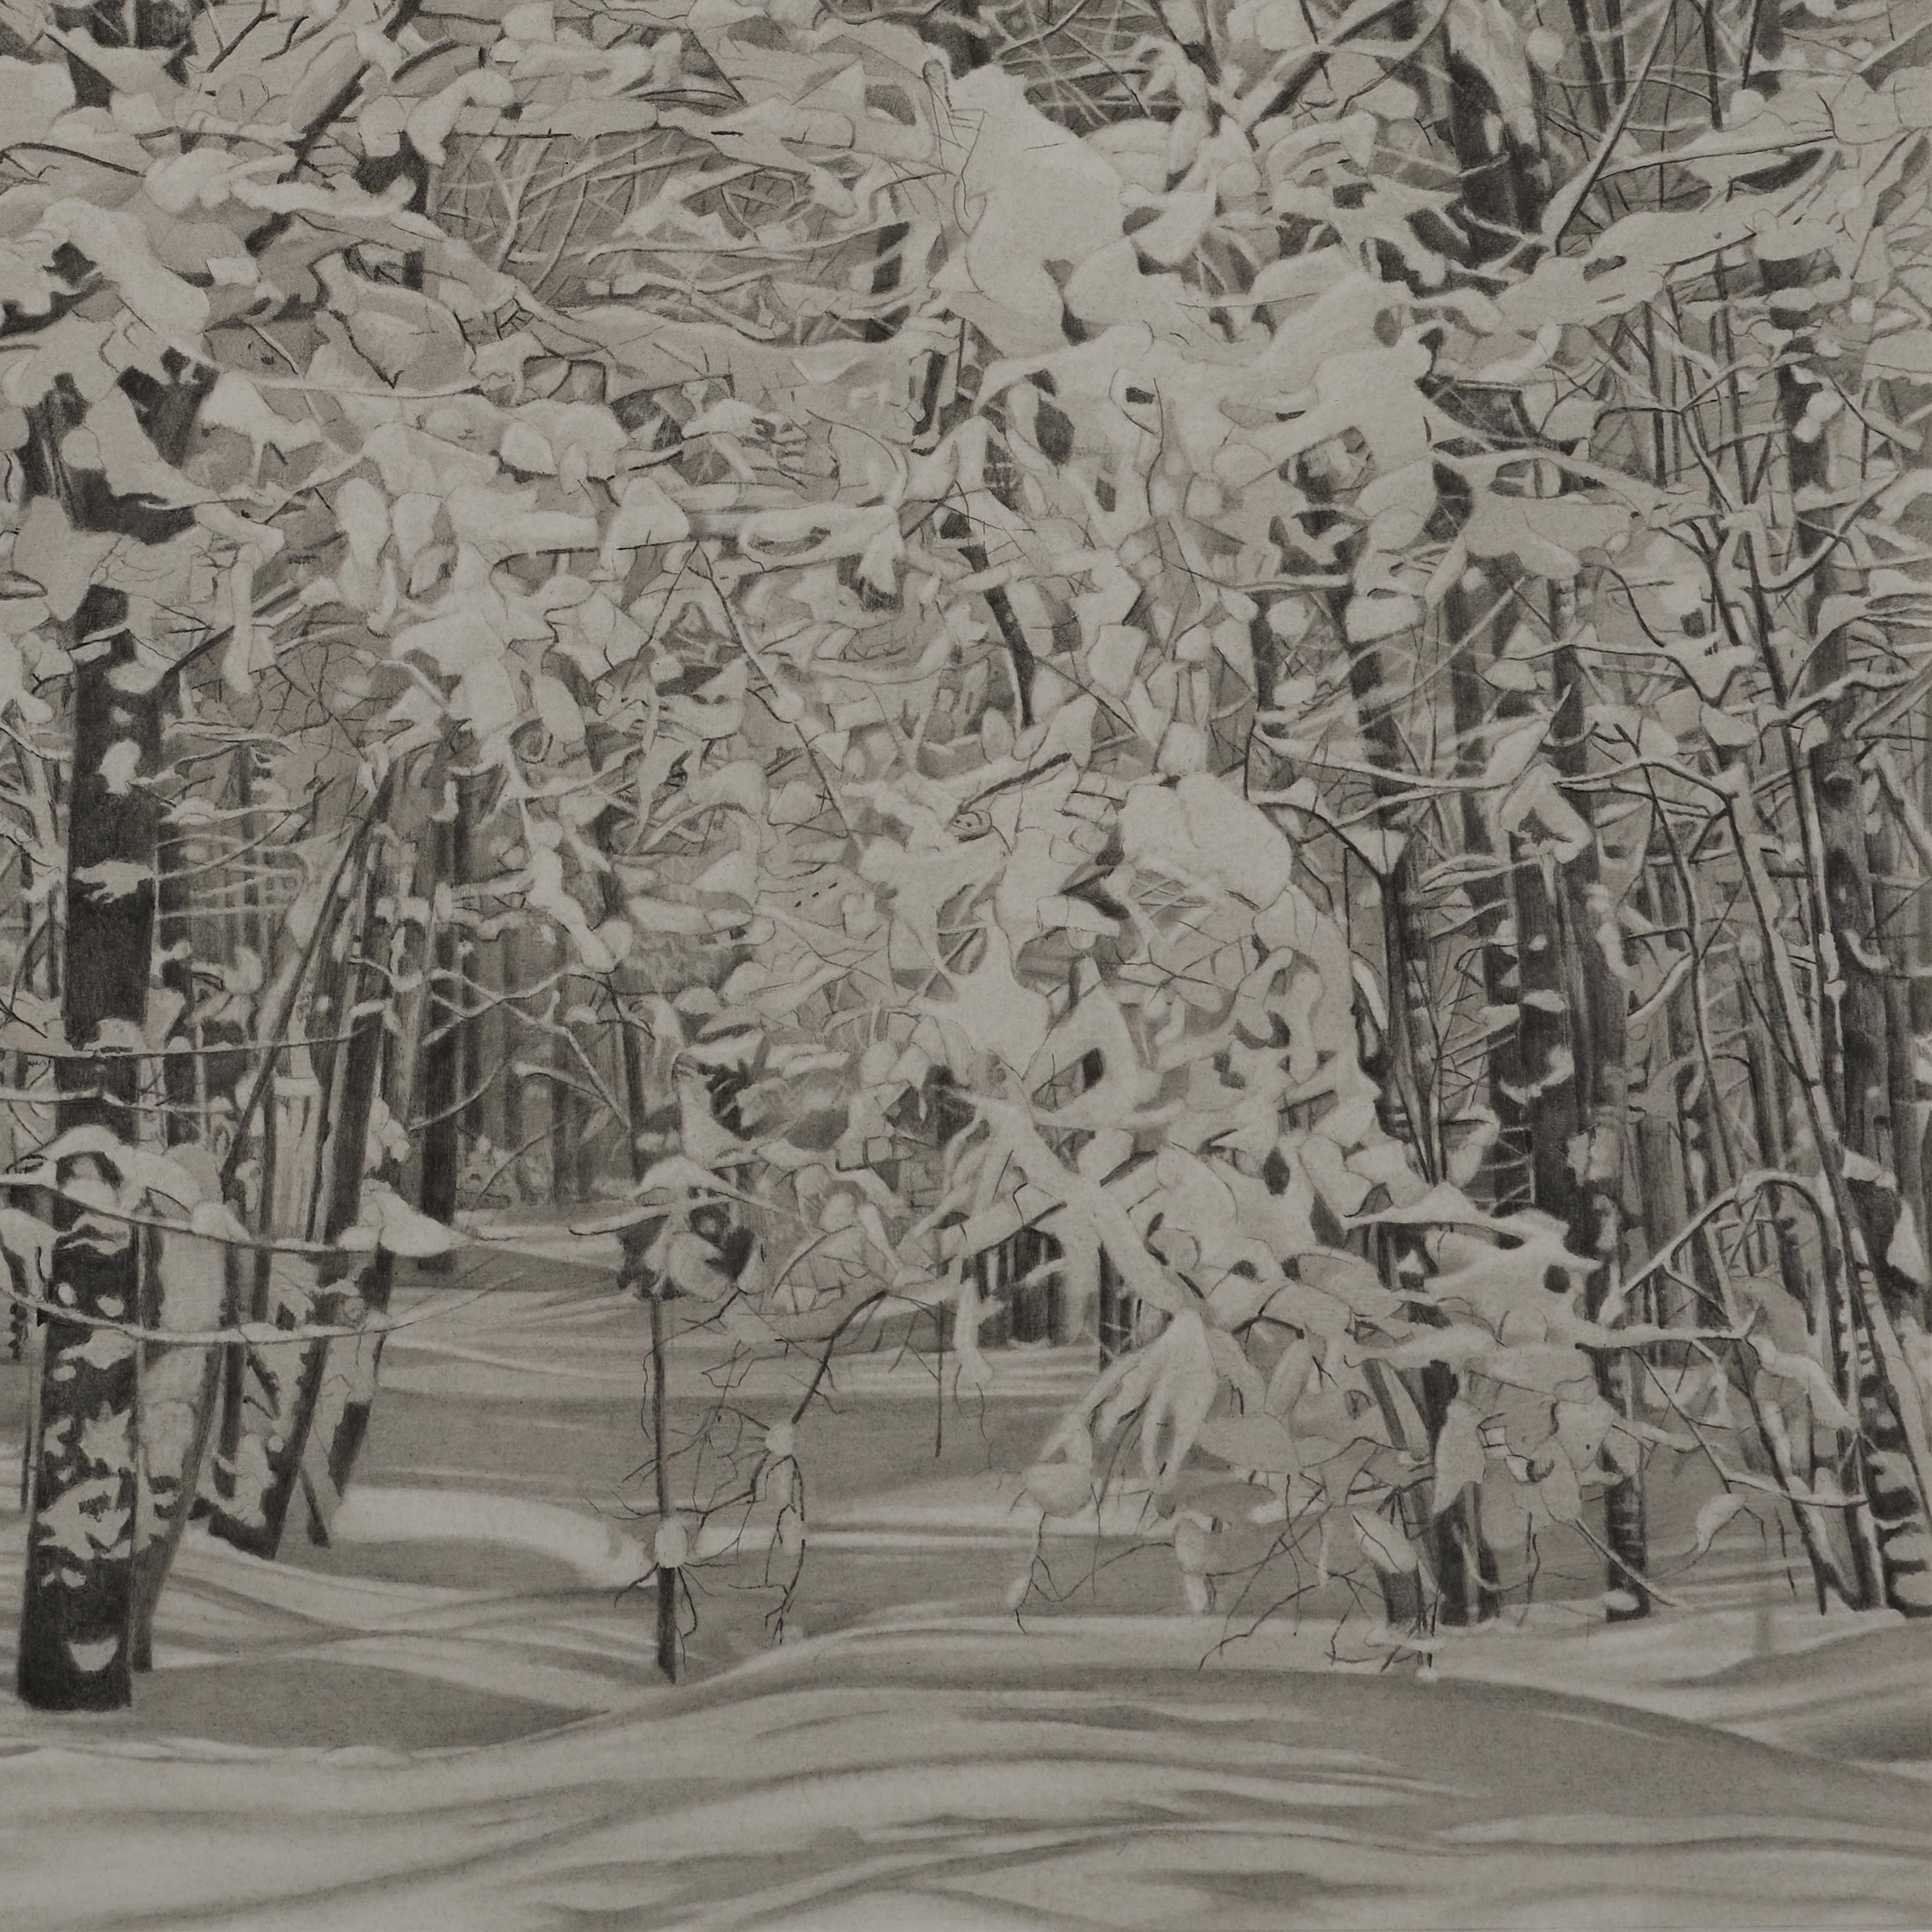 Snowy Woods, fotorealistische Graphit-Landschaftszeichnung, 2023 (Fotorealismus), Art, von Mary Reilly